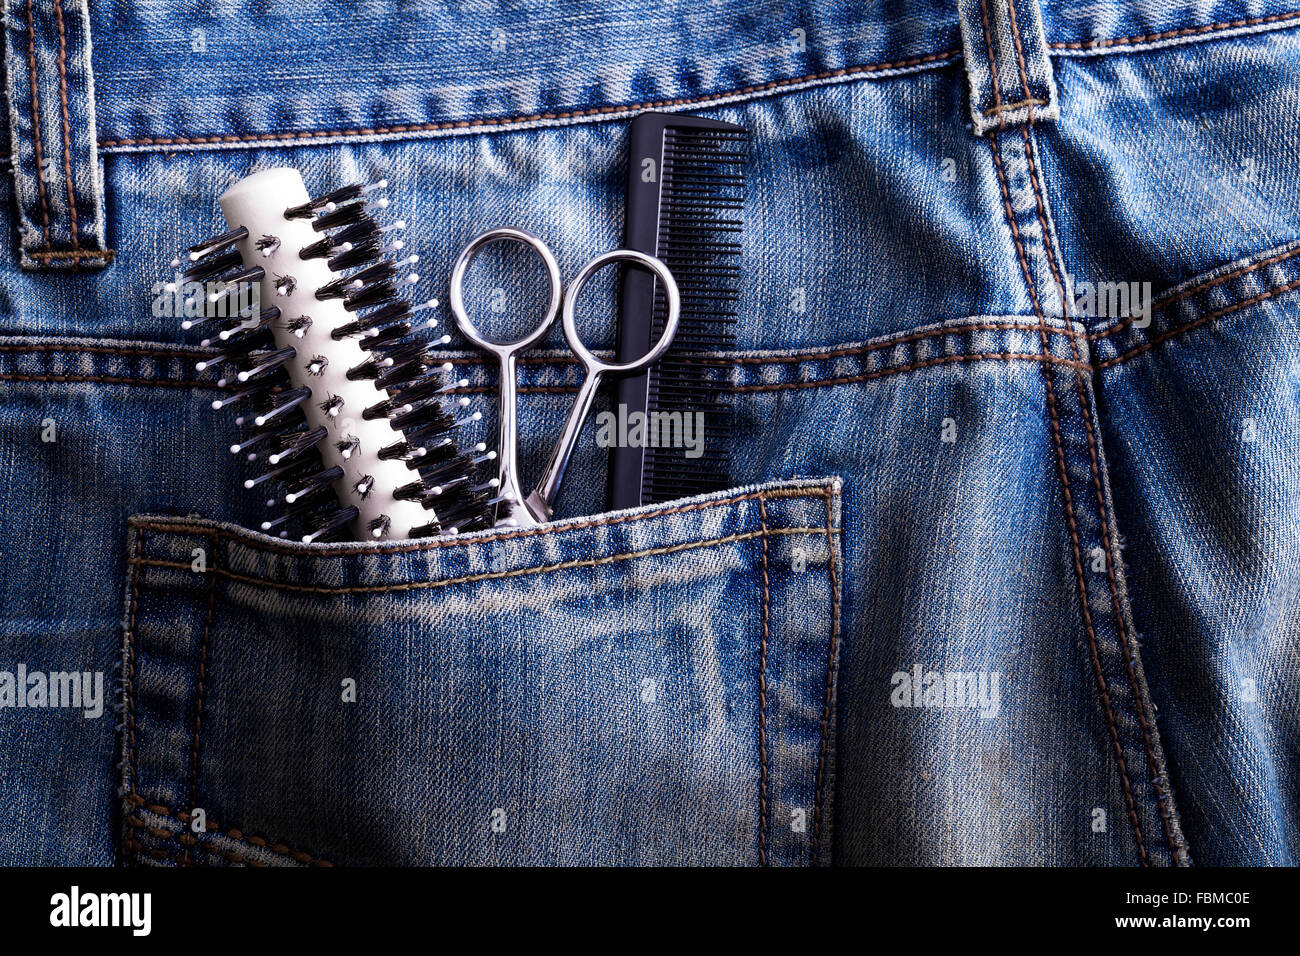 Spazzola, forbici e pettine nella tasca dei jeans Foto Stock